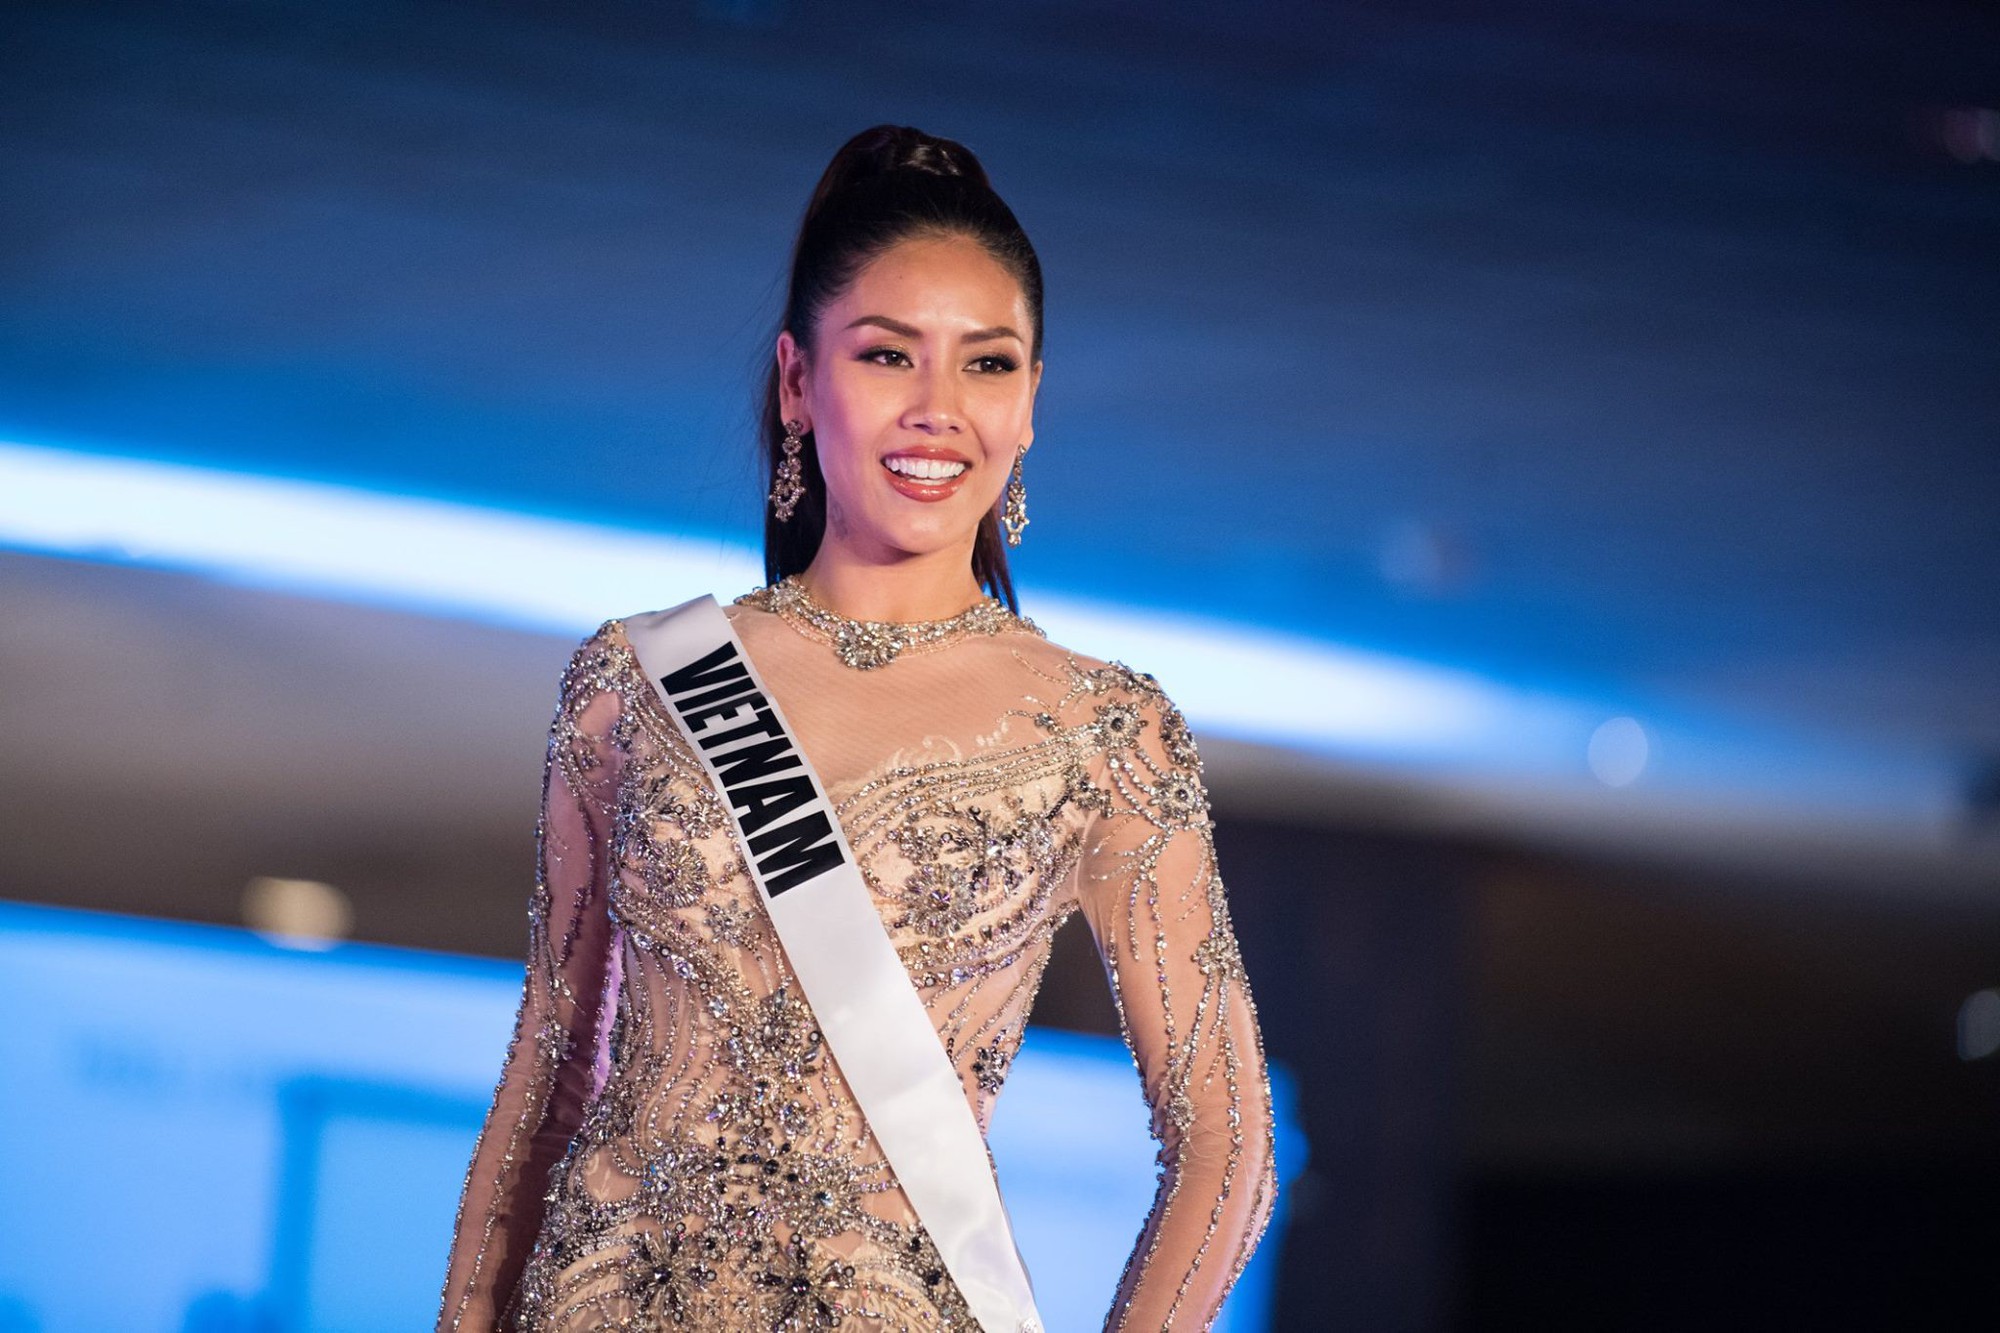 Nguyễn Thị Loan tự tin tỏa sáng trong đêm Bán kết Hoa hậu Hoàn vũ 2017, không có mặt trong top 15 bình chọn của Missosology - Ảnh 8.